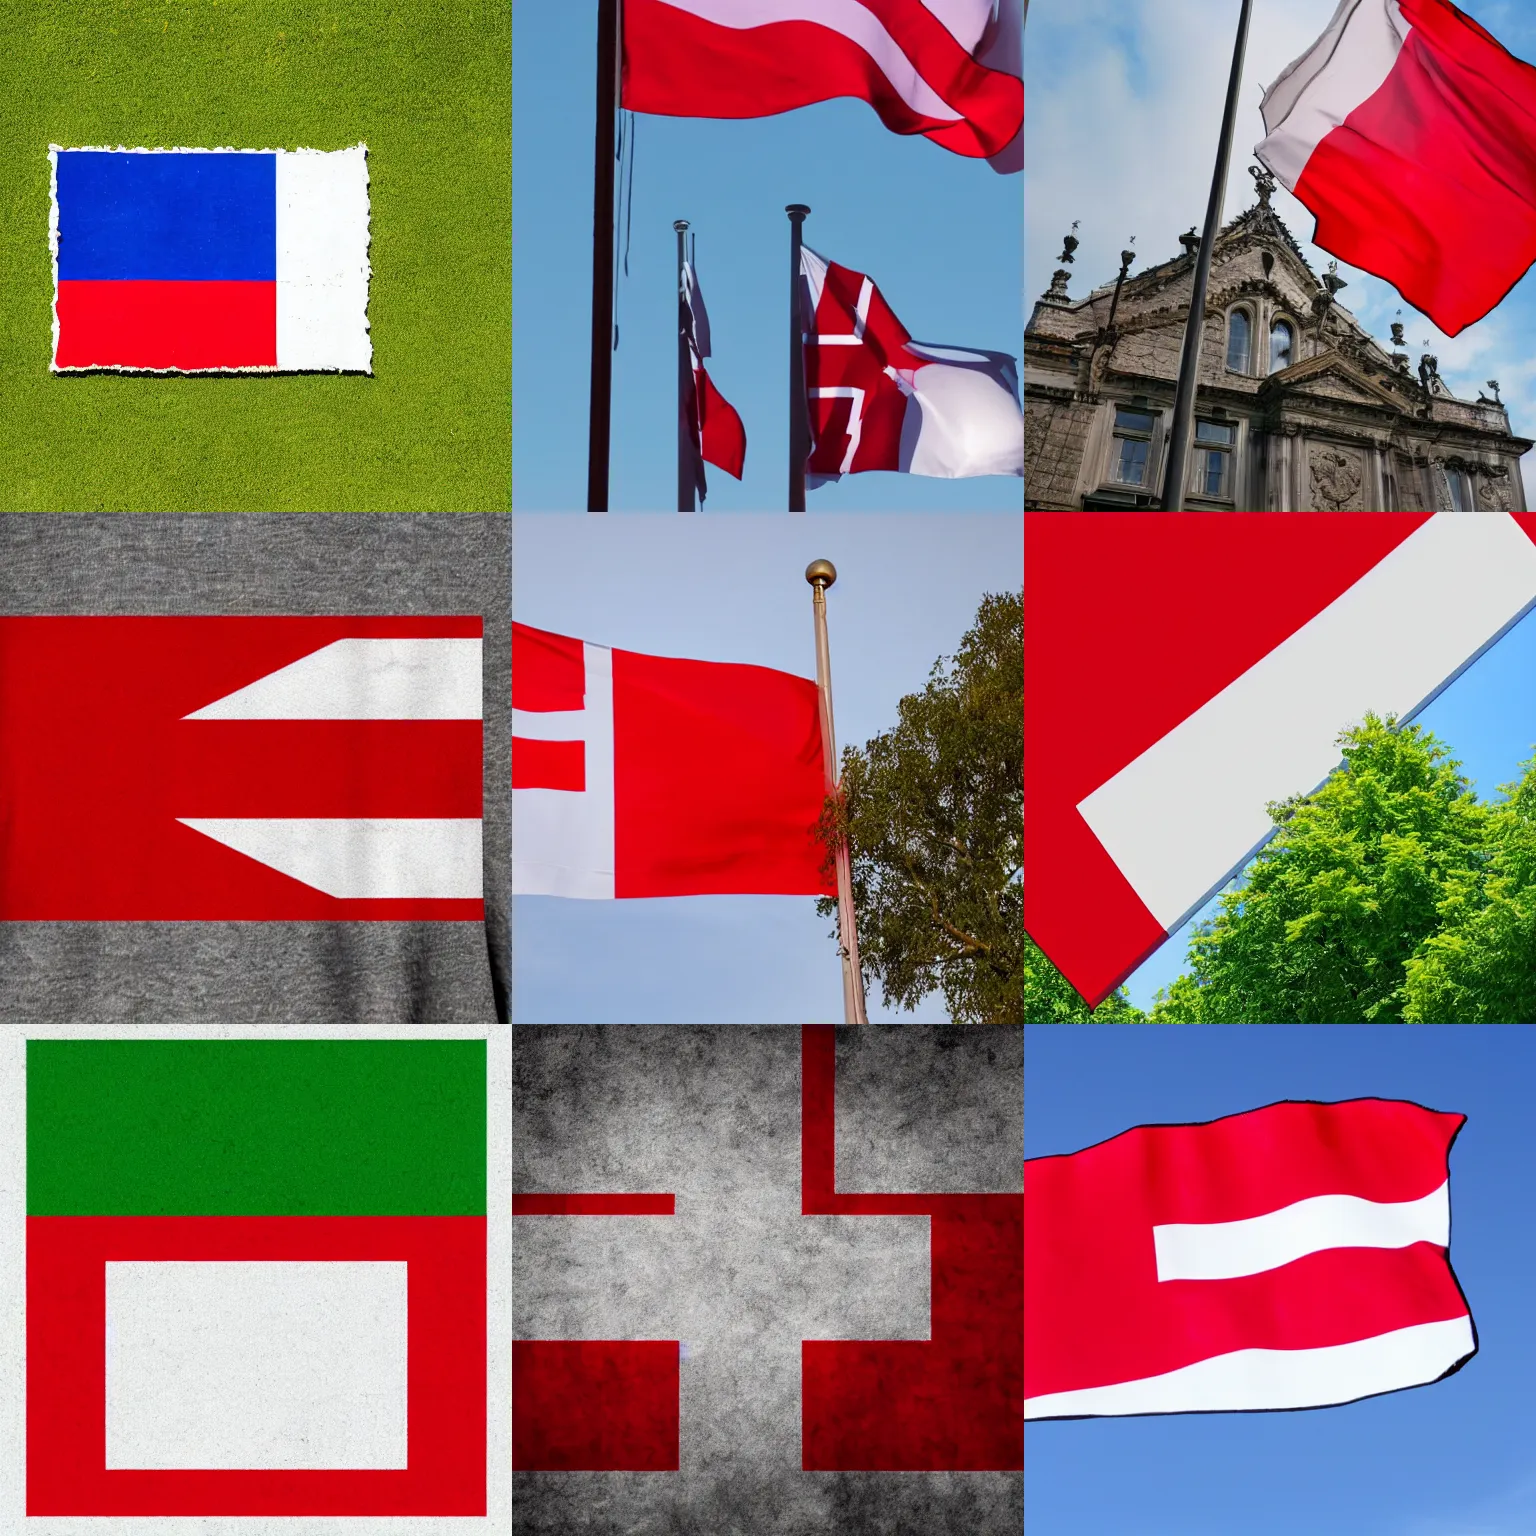 Prompt: The Danish flag